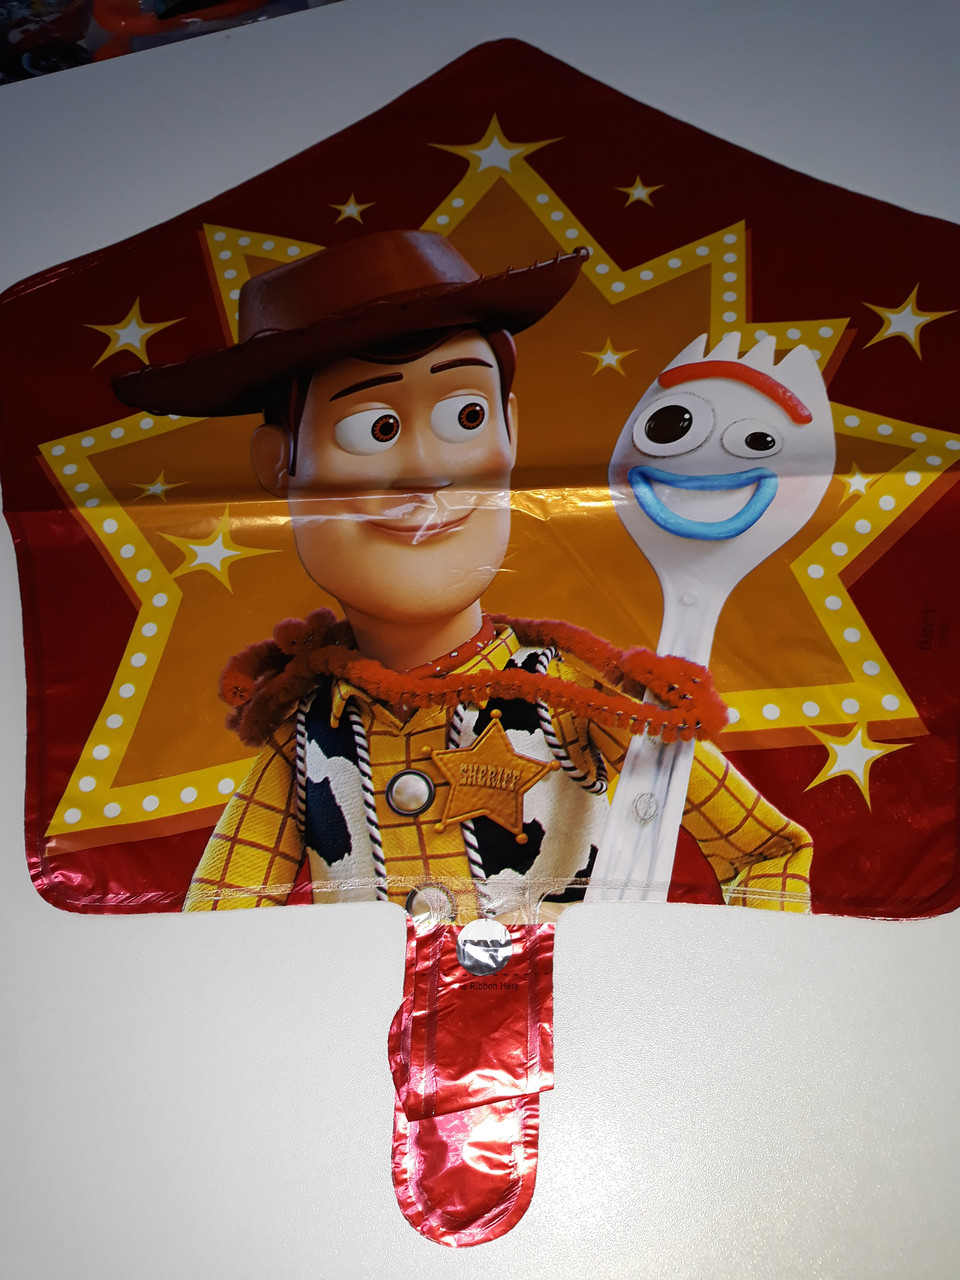 Гелиевый шар фольгированный, в форме звезды с рисунком герои мультфильма Истории игрушек